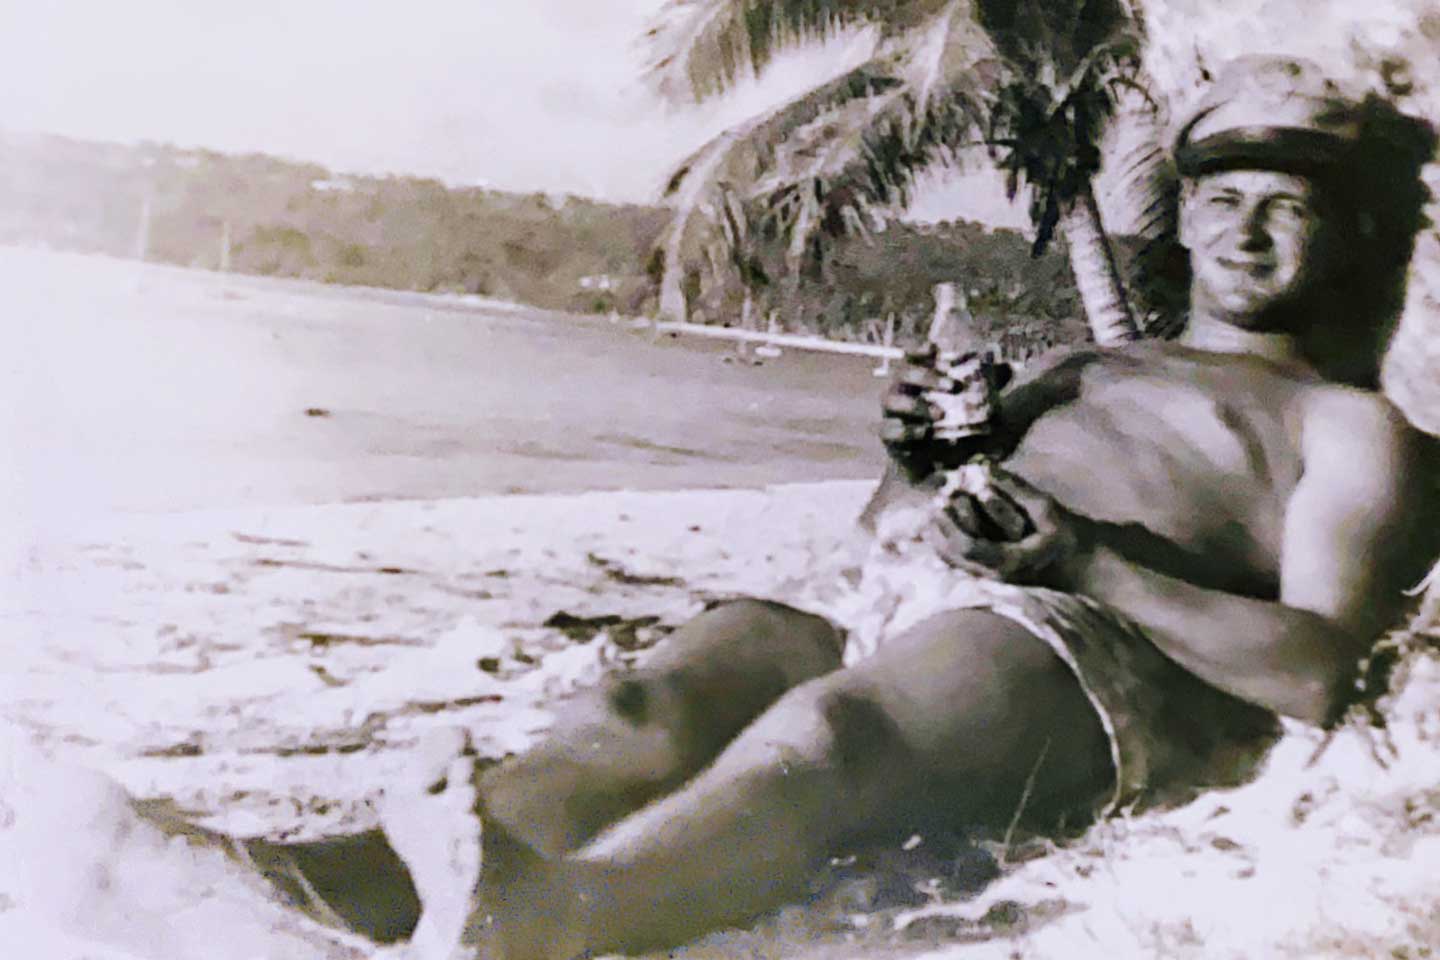 Paul ในวัยหนุ่มนอนอยู่บนชายหาดโดยไม่ใส่เสื้อ